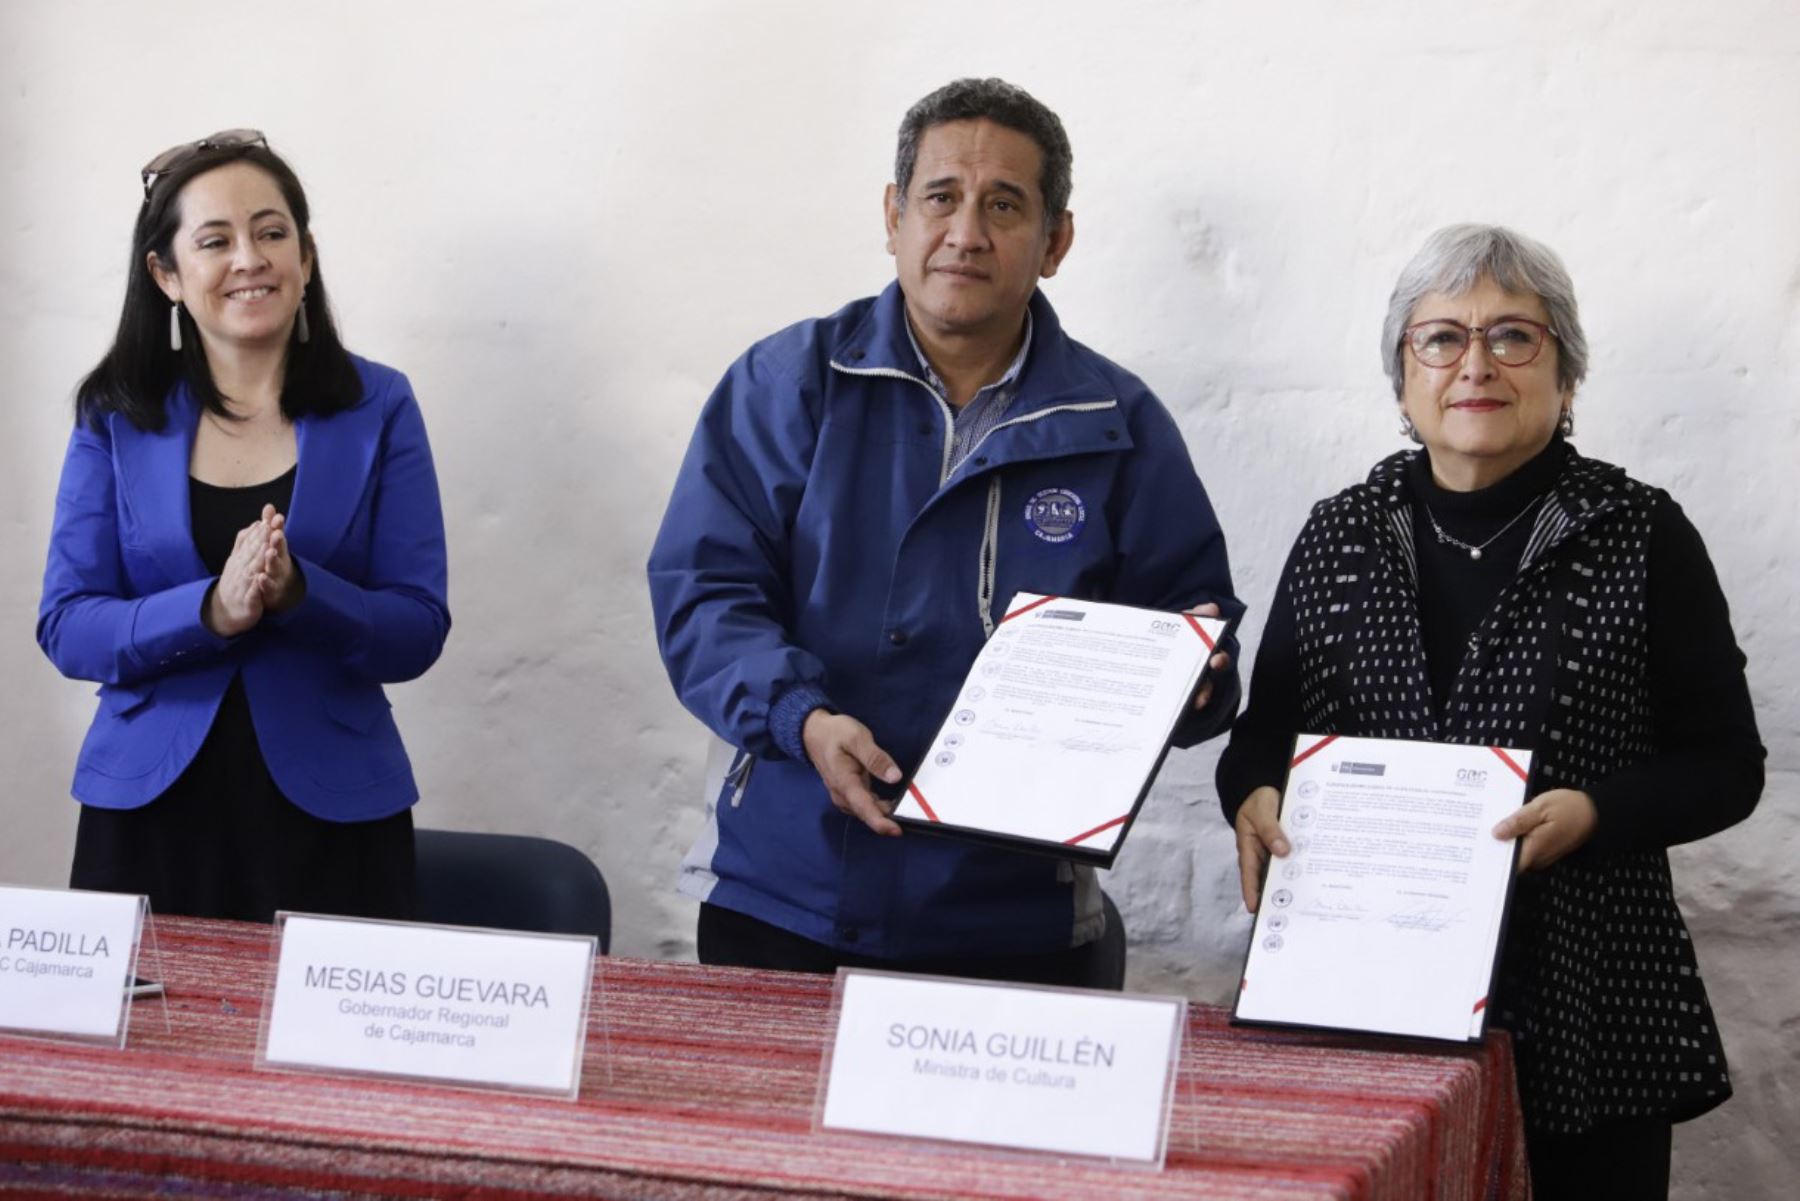 La ministra de Cultura, Sonia Guillén, y el gobernador regional de Cajamarca, Mesías Guevara, firman convenio para digitalizar los sitios considerados patrimonio cultural de esta región del nororiente peruano.